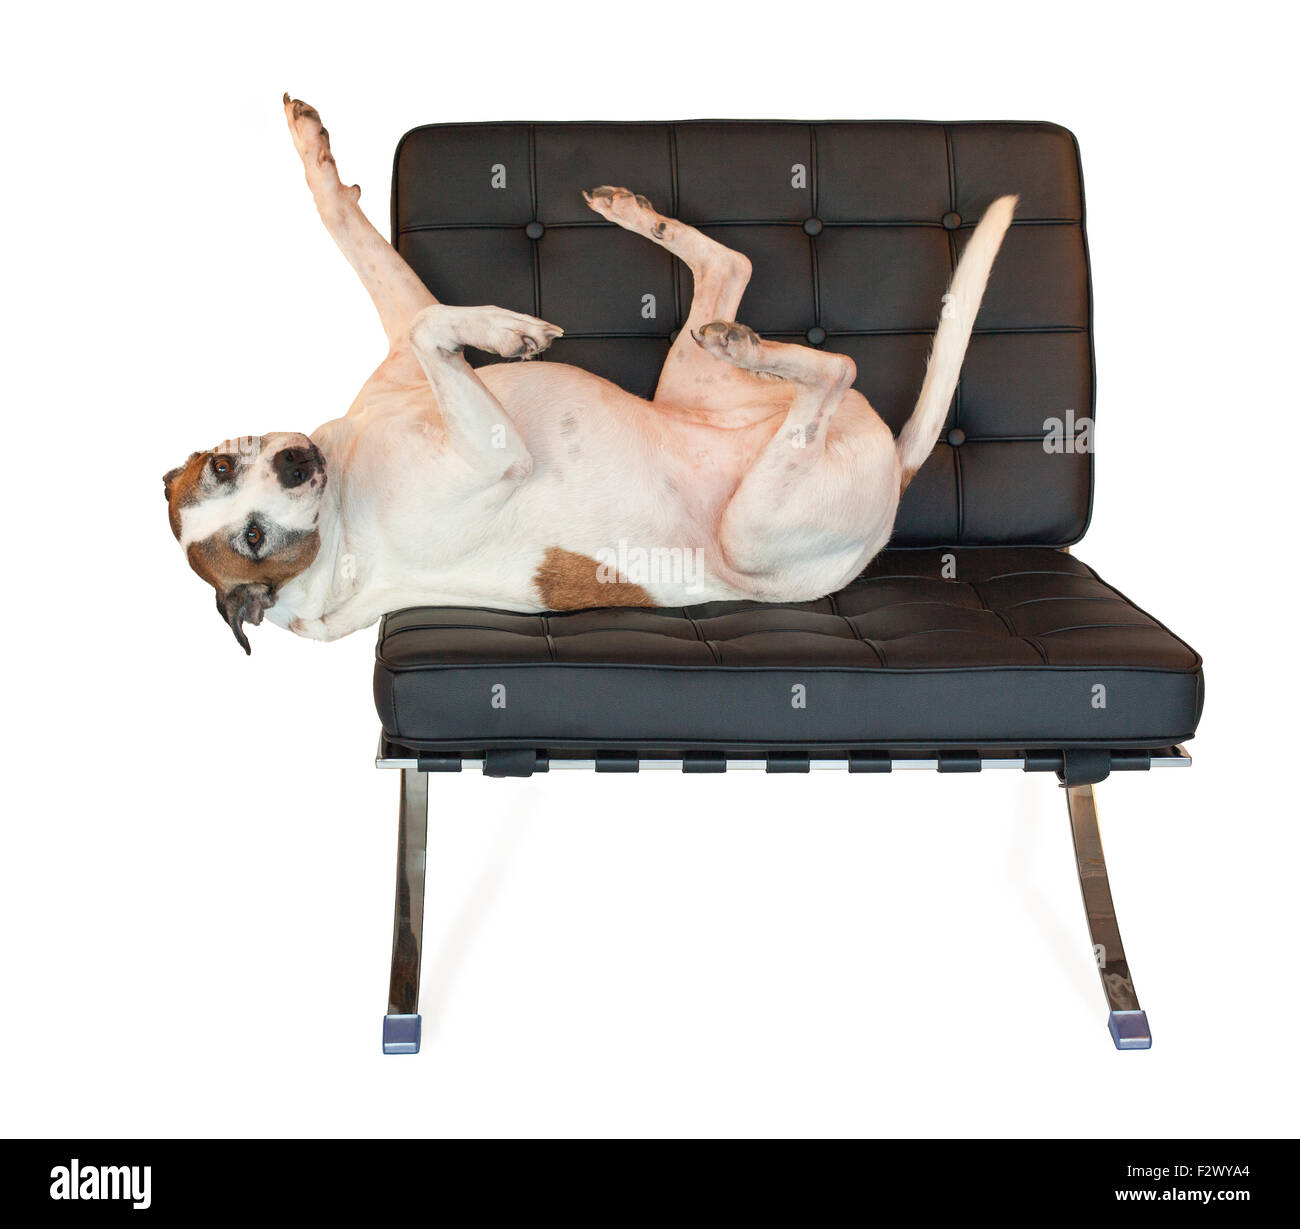 American Staffordshire terrier pitbull dog avec les pieds dans l'air ; sait comment se détendre sur sa chaise Barcelone moderne au milieu du siècle Banque D'Images